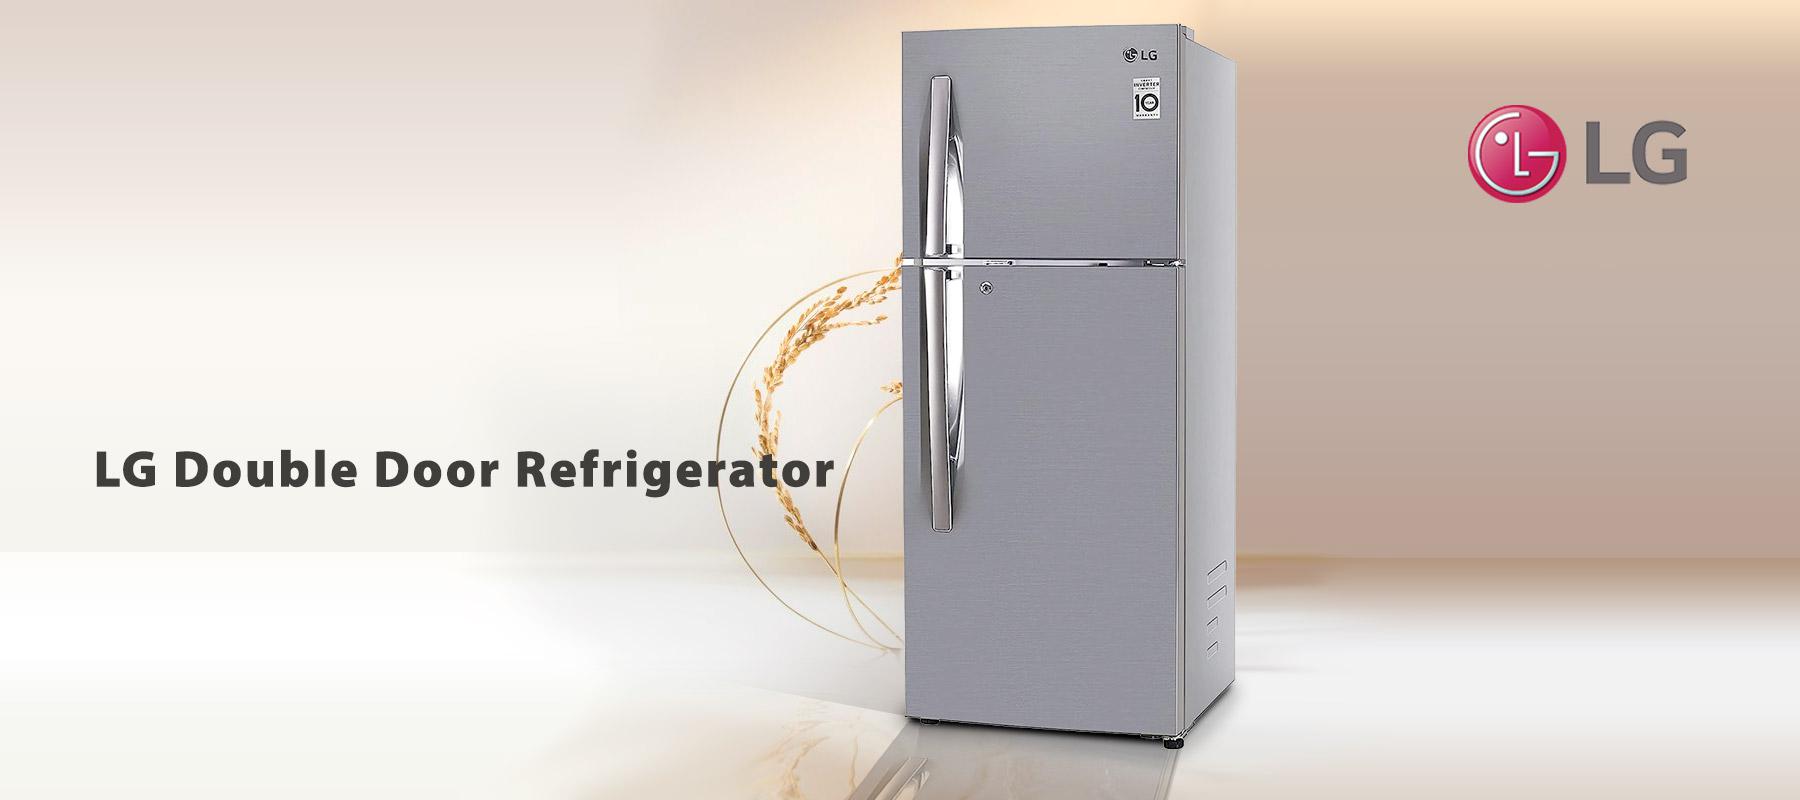 LG-Double-Door-Refrigerator.jpg